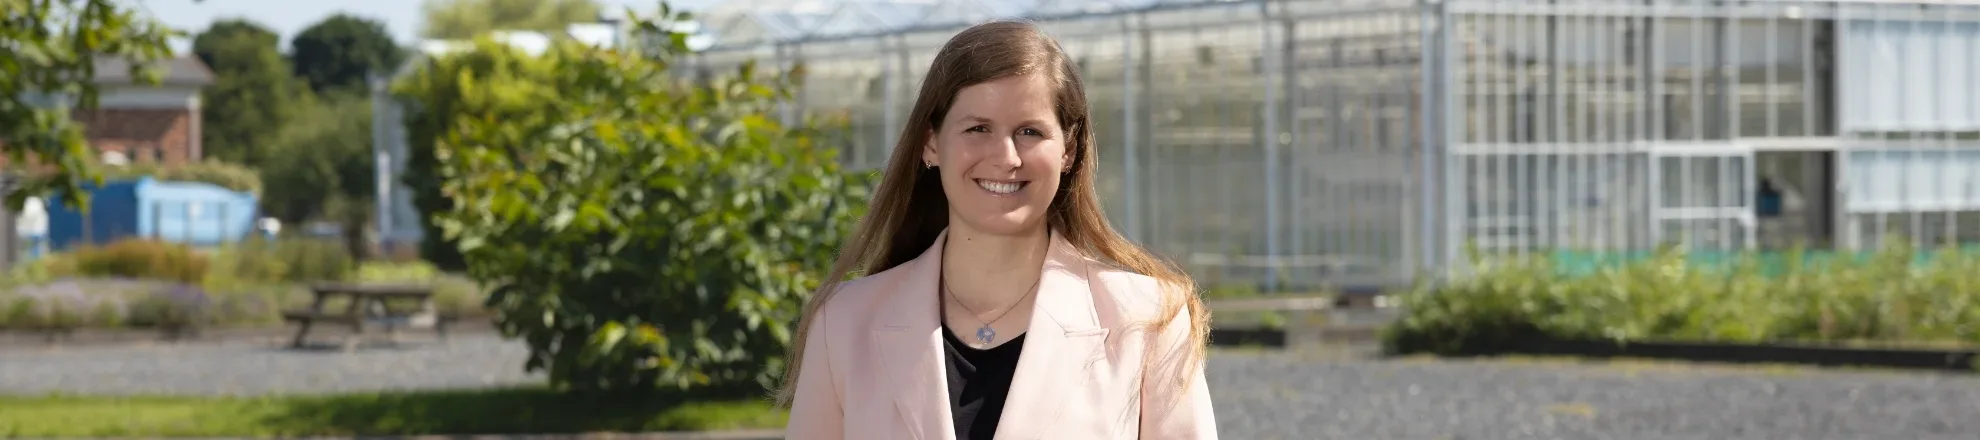 Lianne Jens is docent en onderzoeker bij Aeres Hogeschool Dronten. 